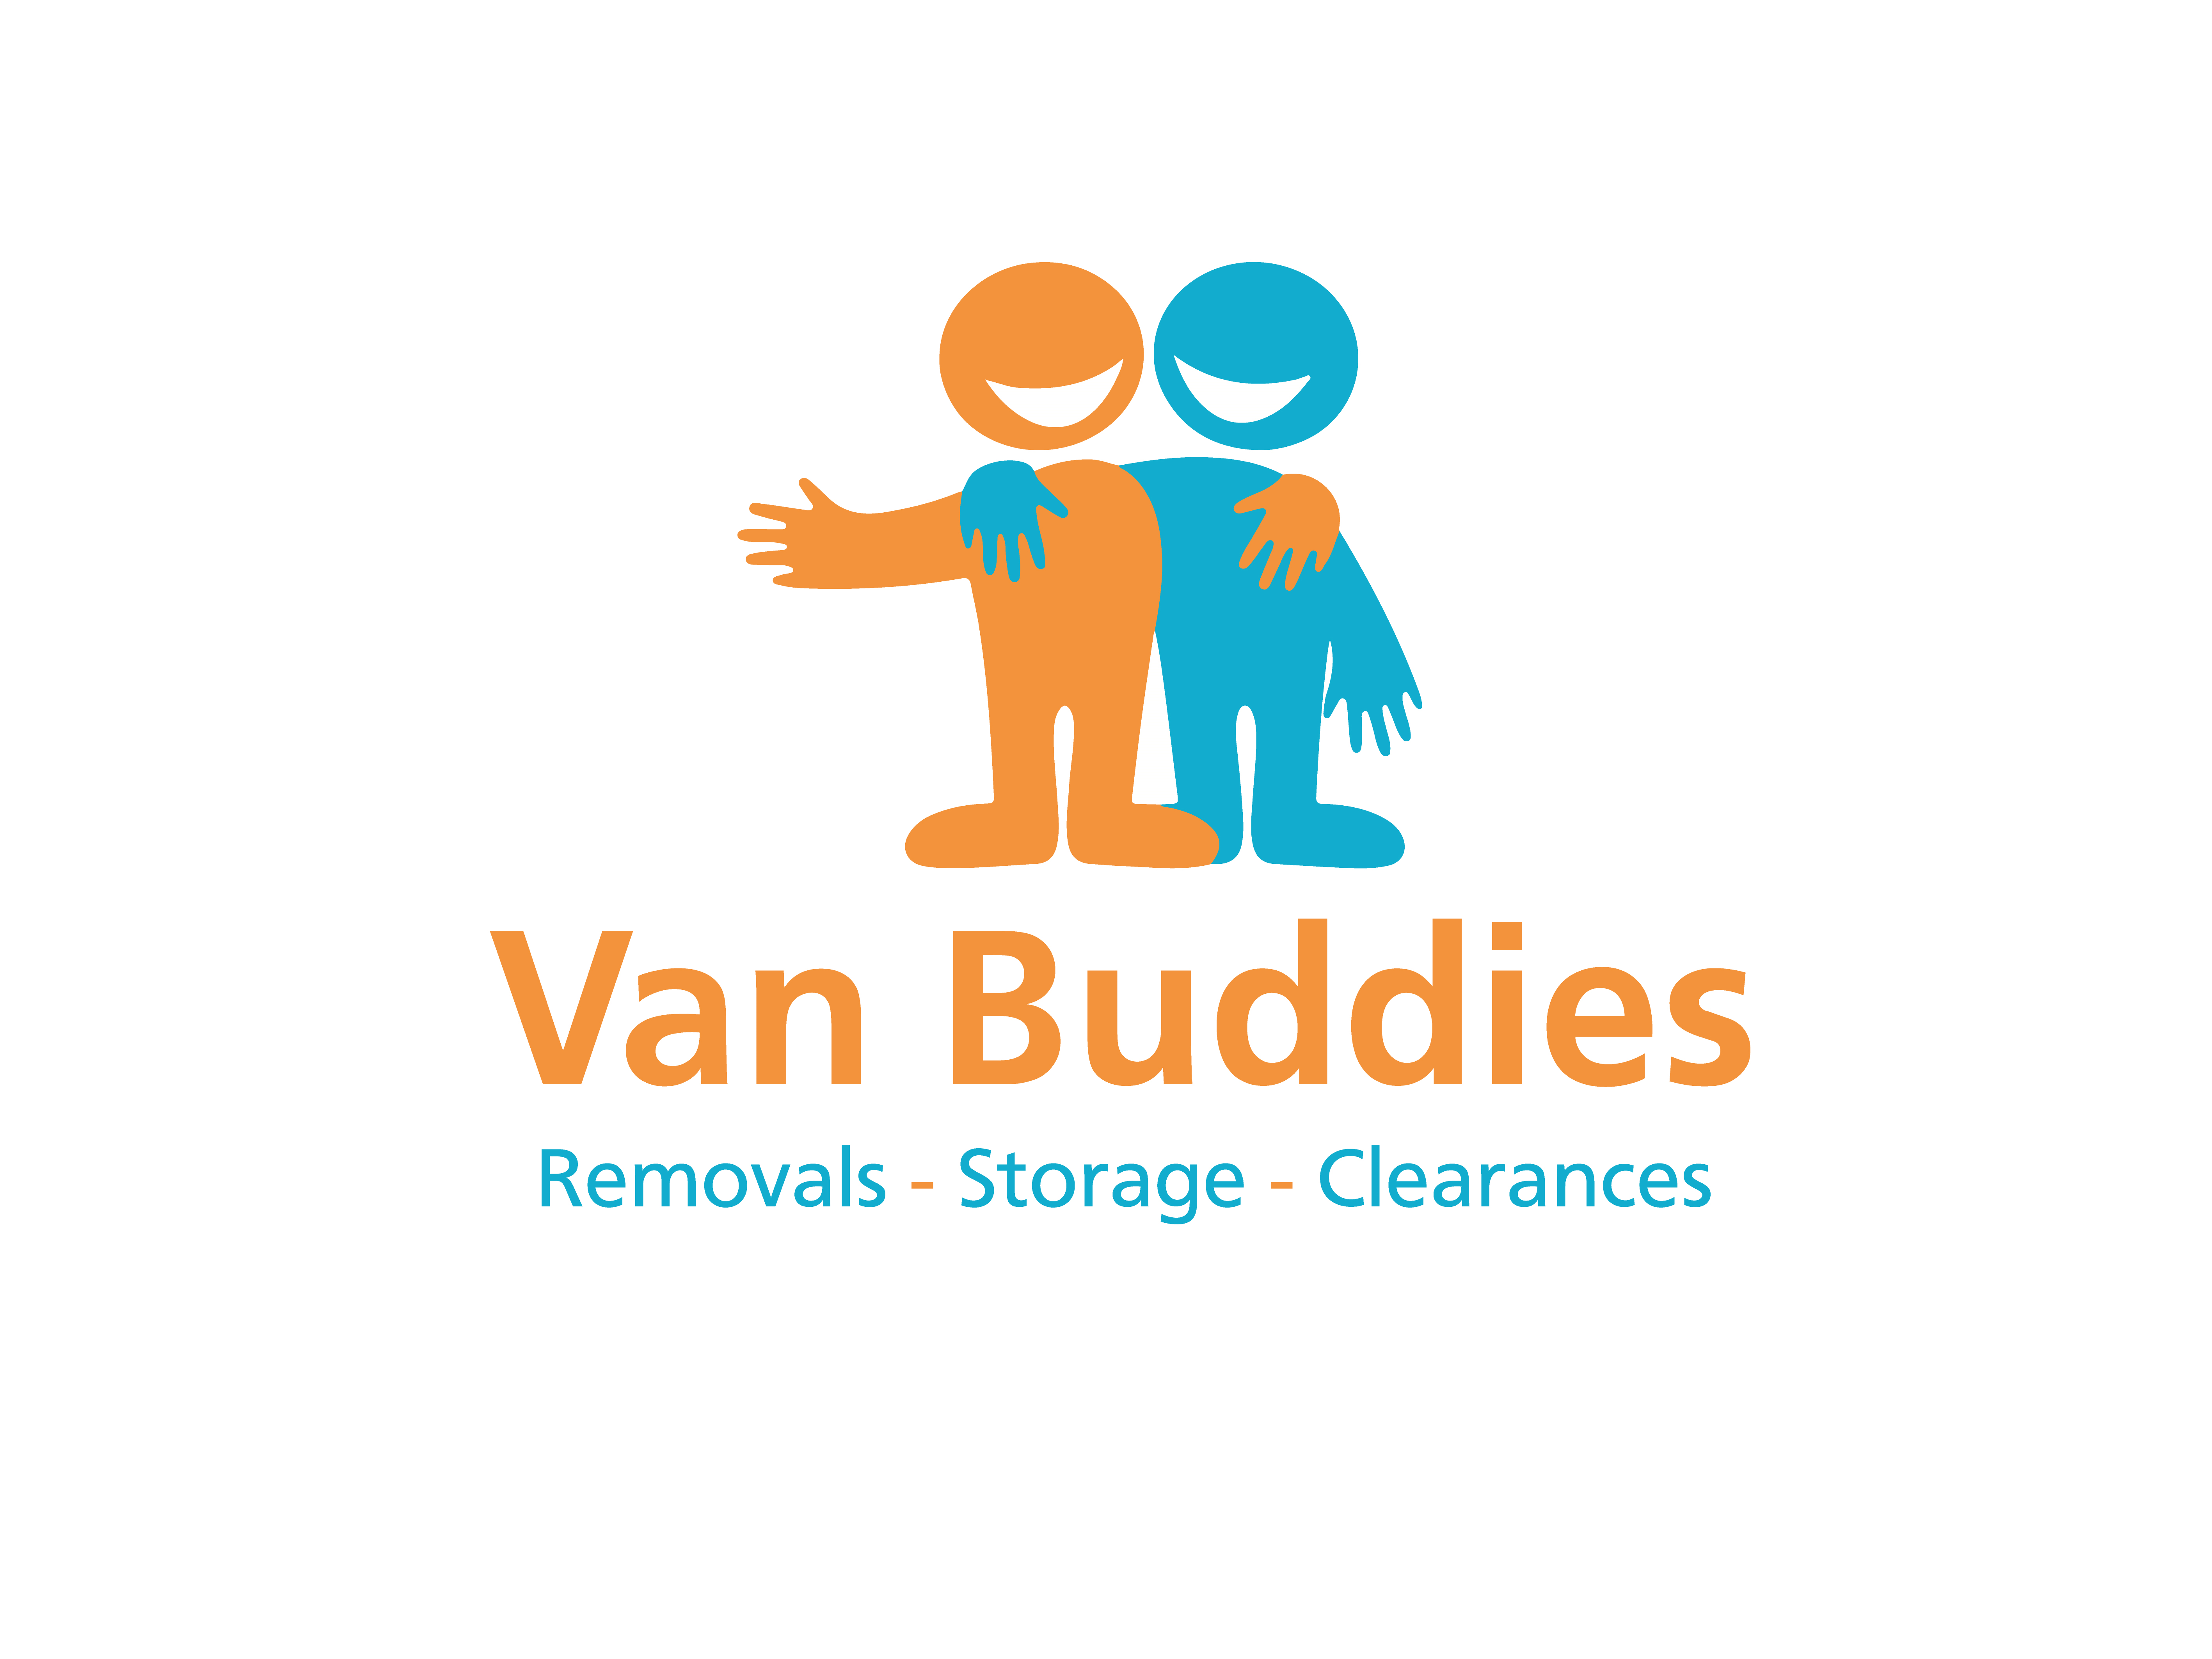 Van-Buddies